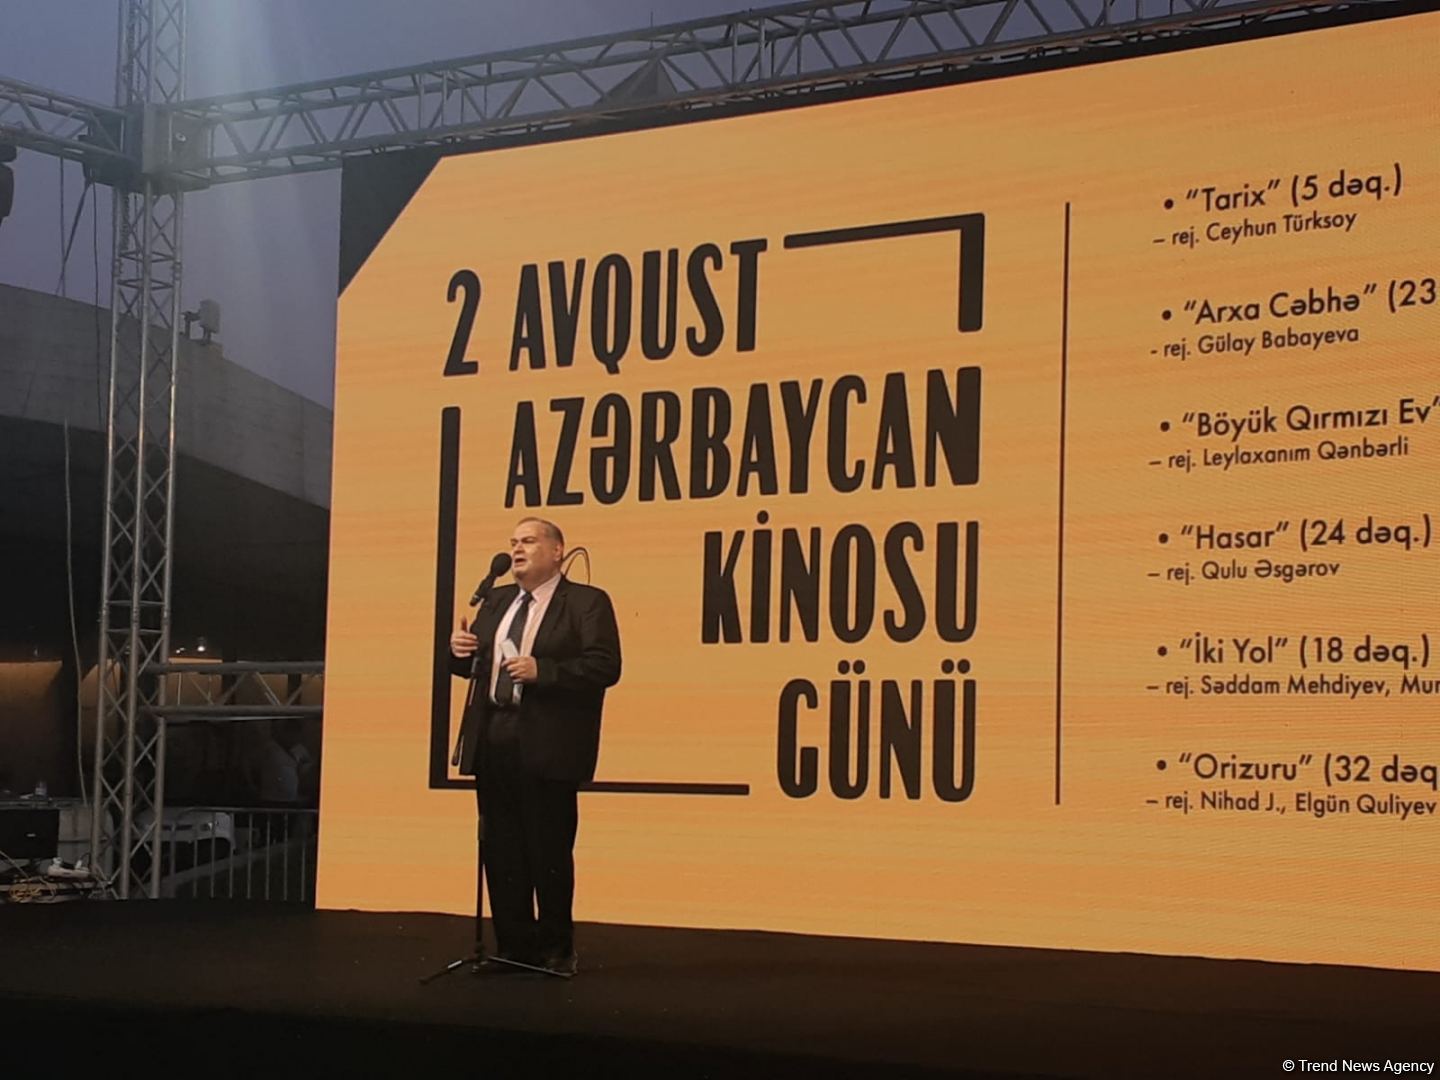 Кинопоказ под открытым небом - в Баку отмечают День национального кино (ФОТО)